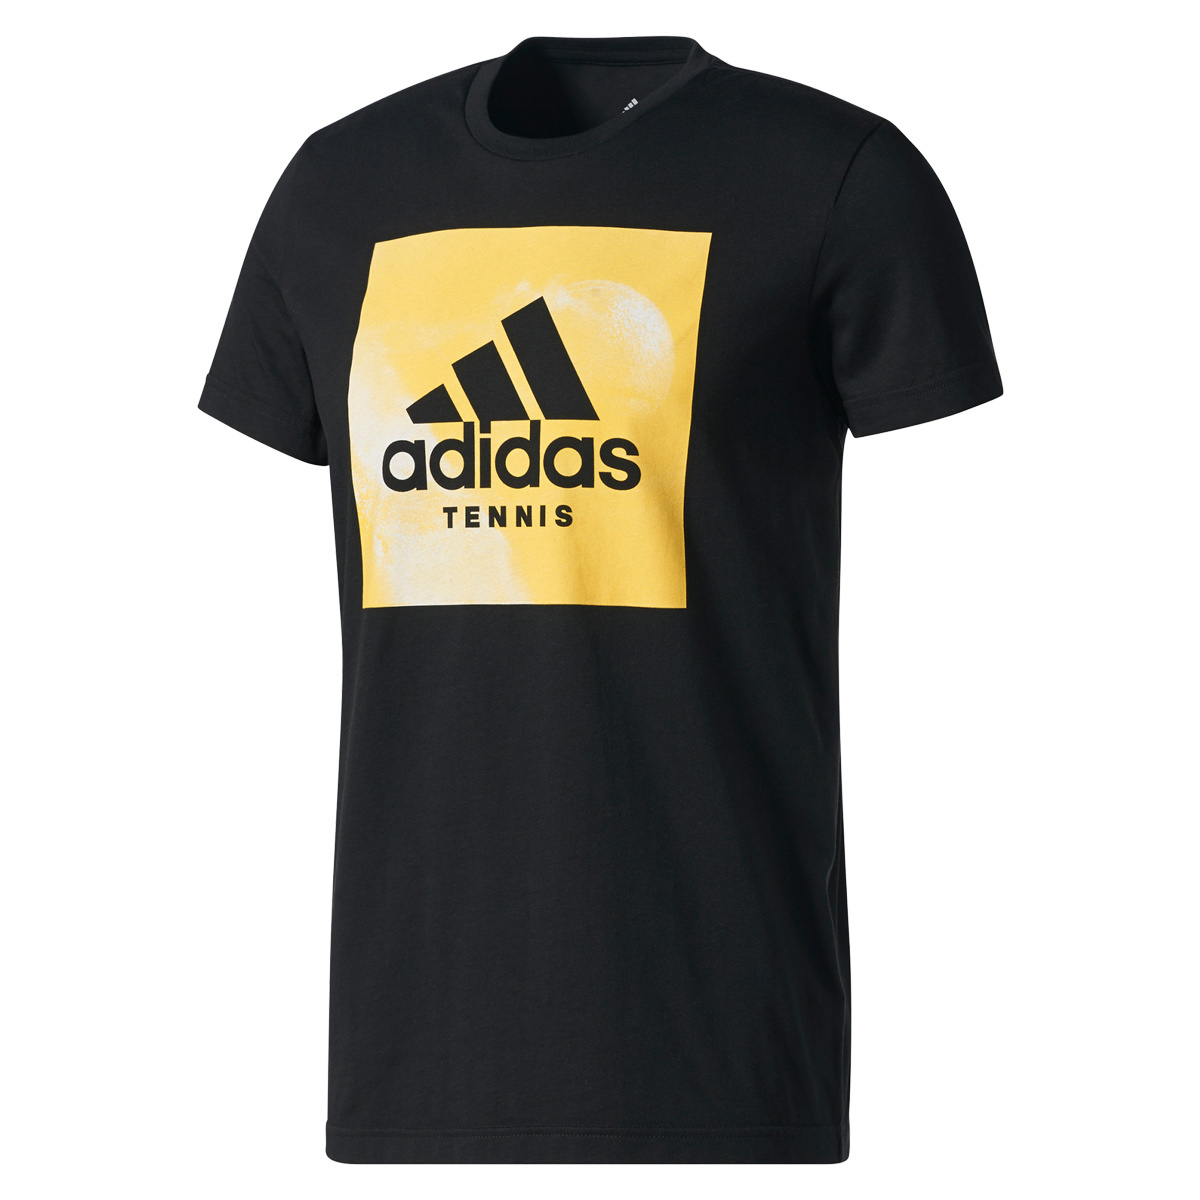 Adidas Tshirt TENNIS schwarz